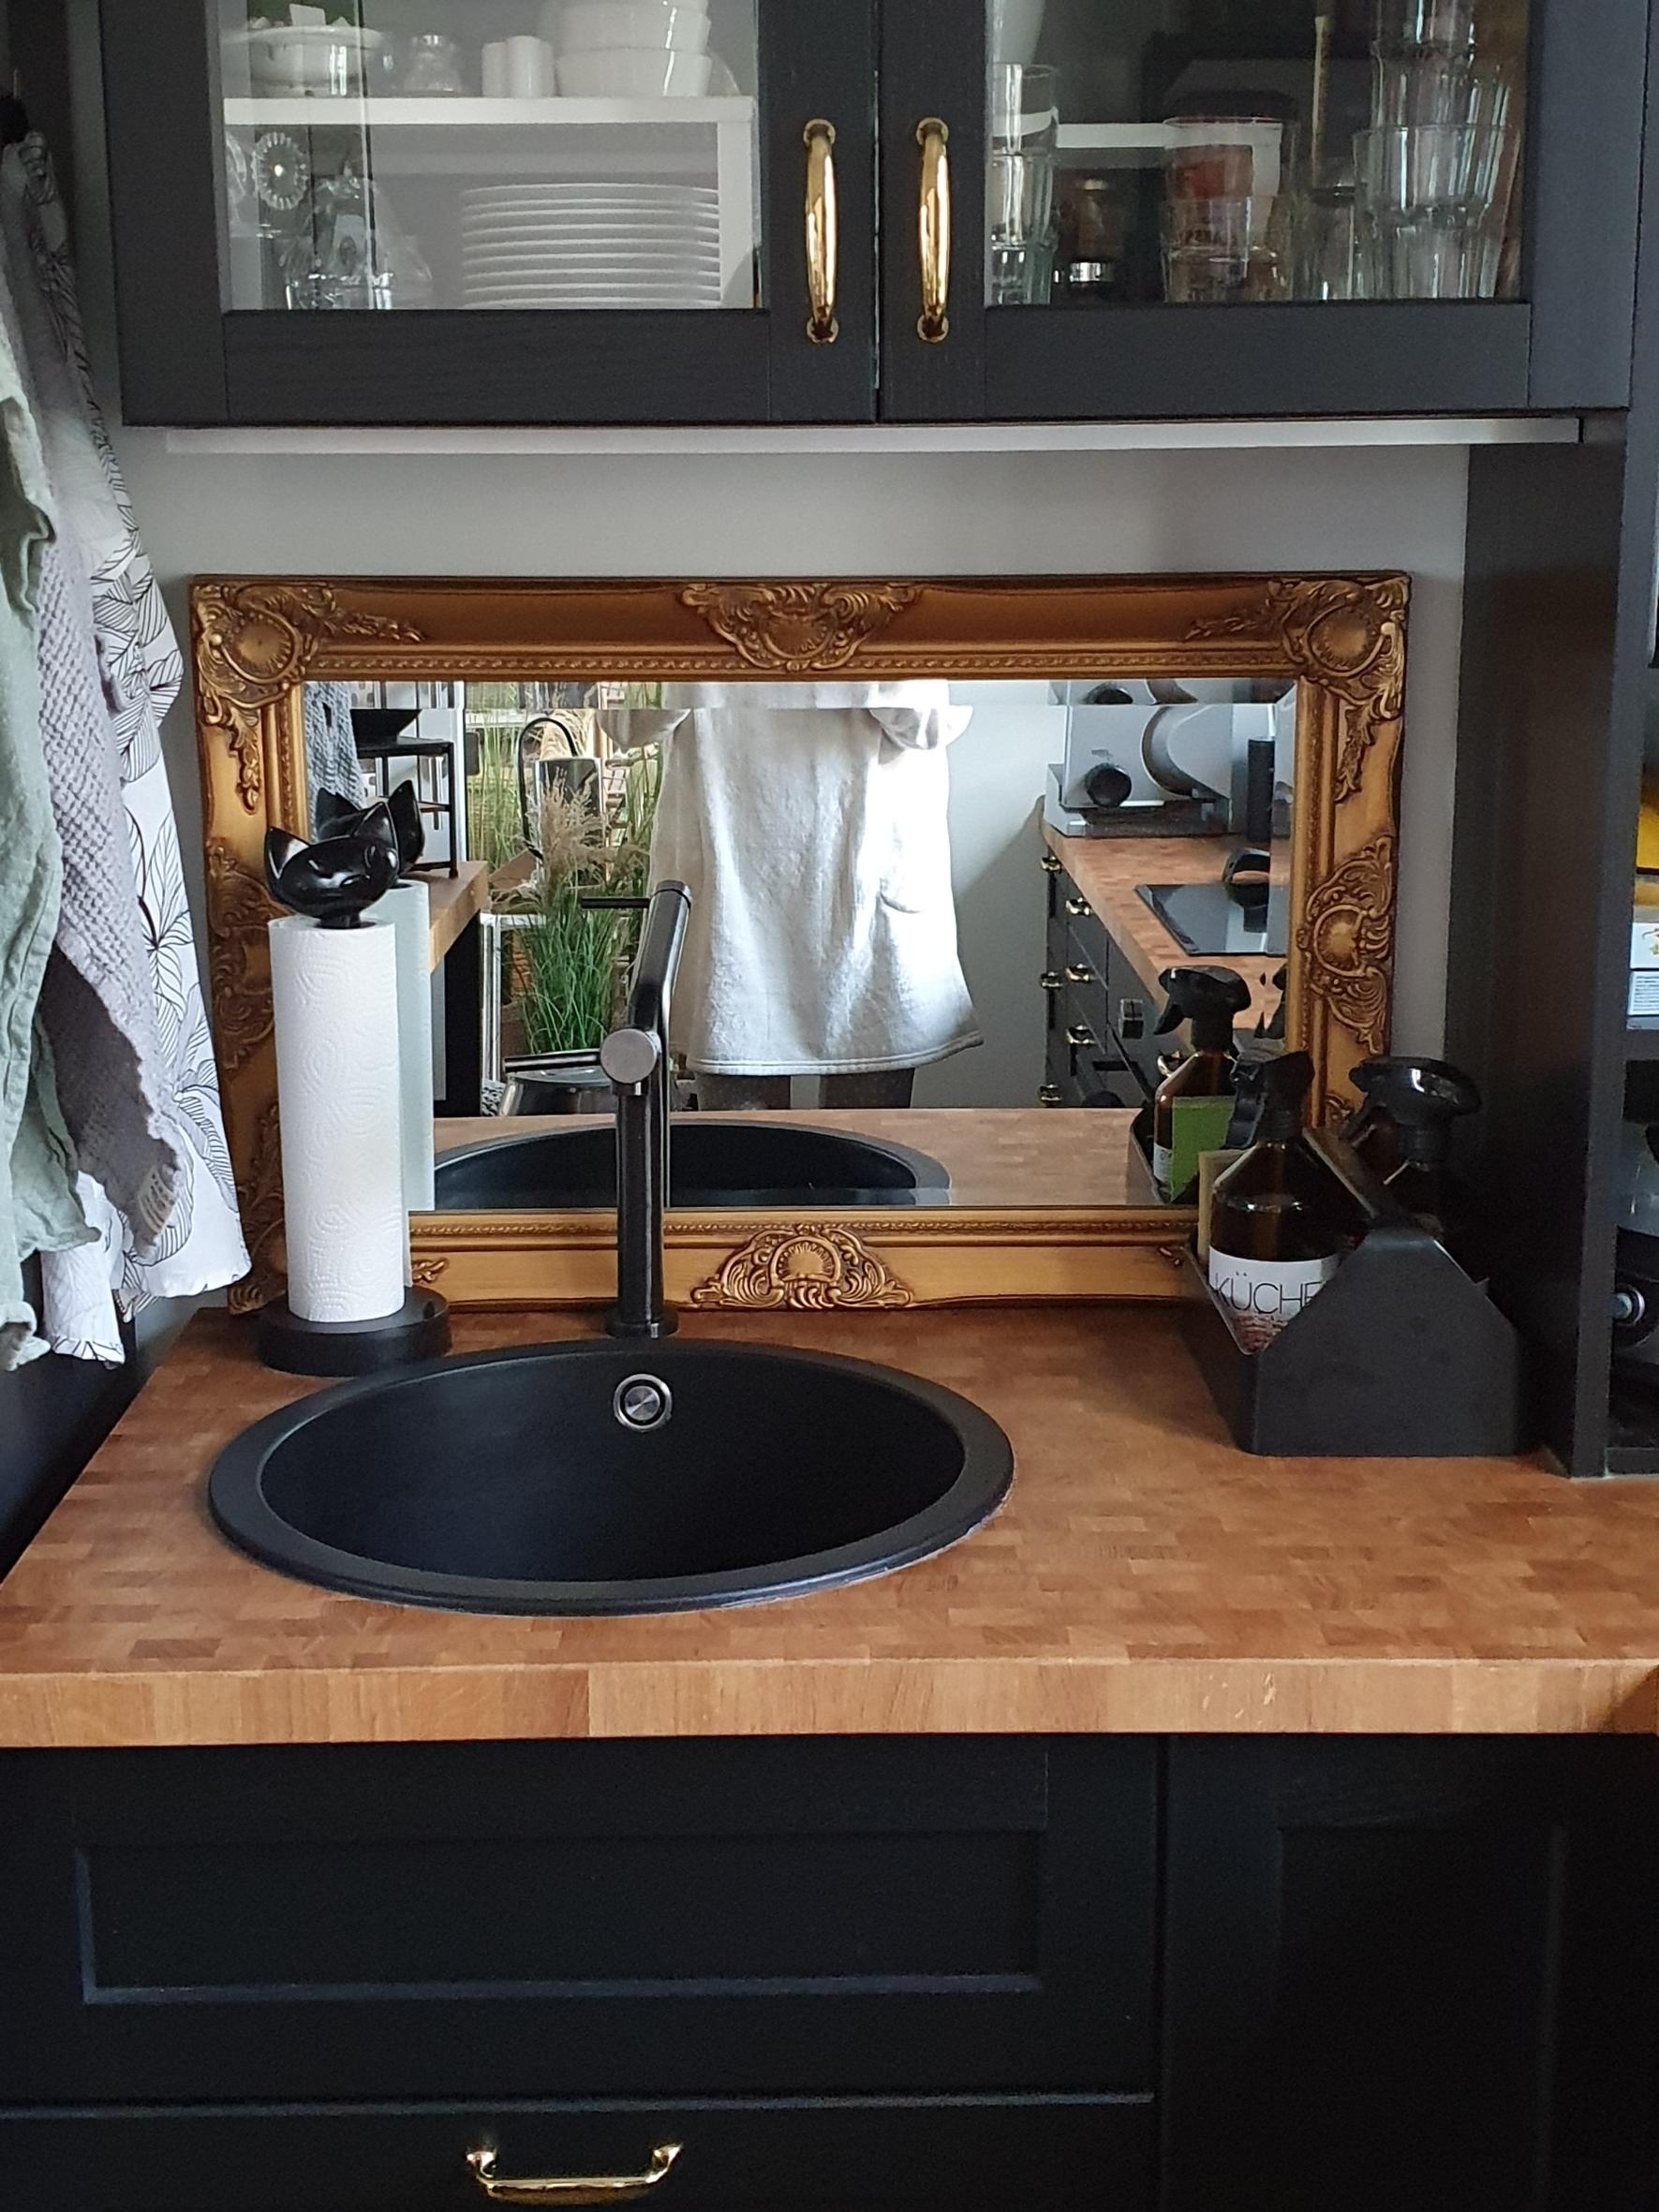 Meine Küche mit Spiegel als Spritzschutz.
#livingchallenge #küche